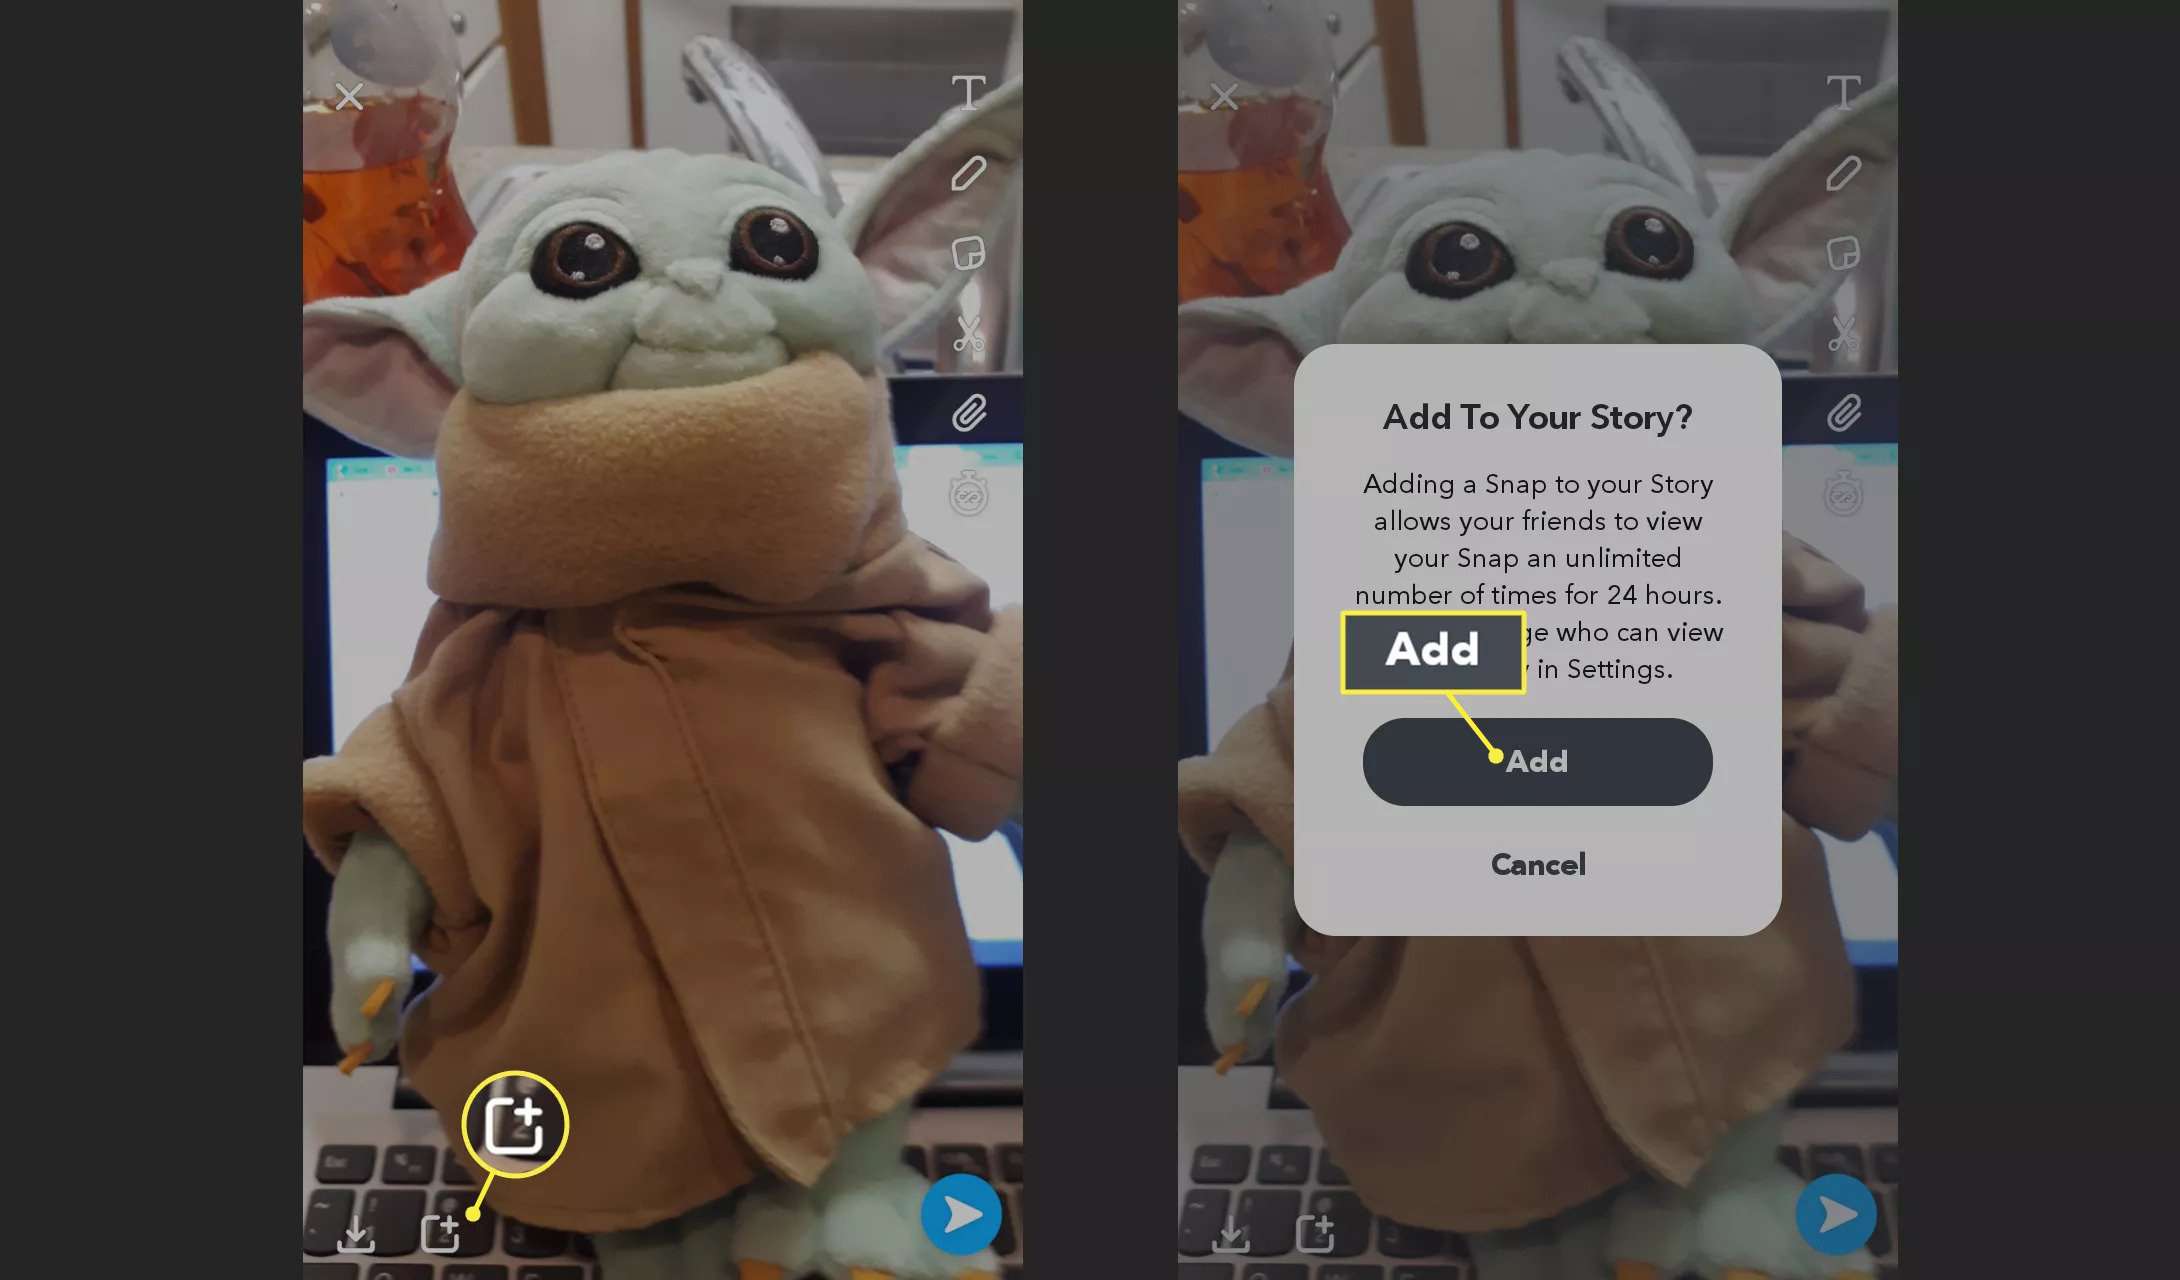 Voeg een snap toe aan je Snapchat-verhaal